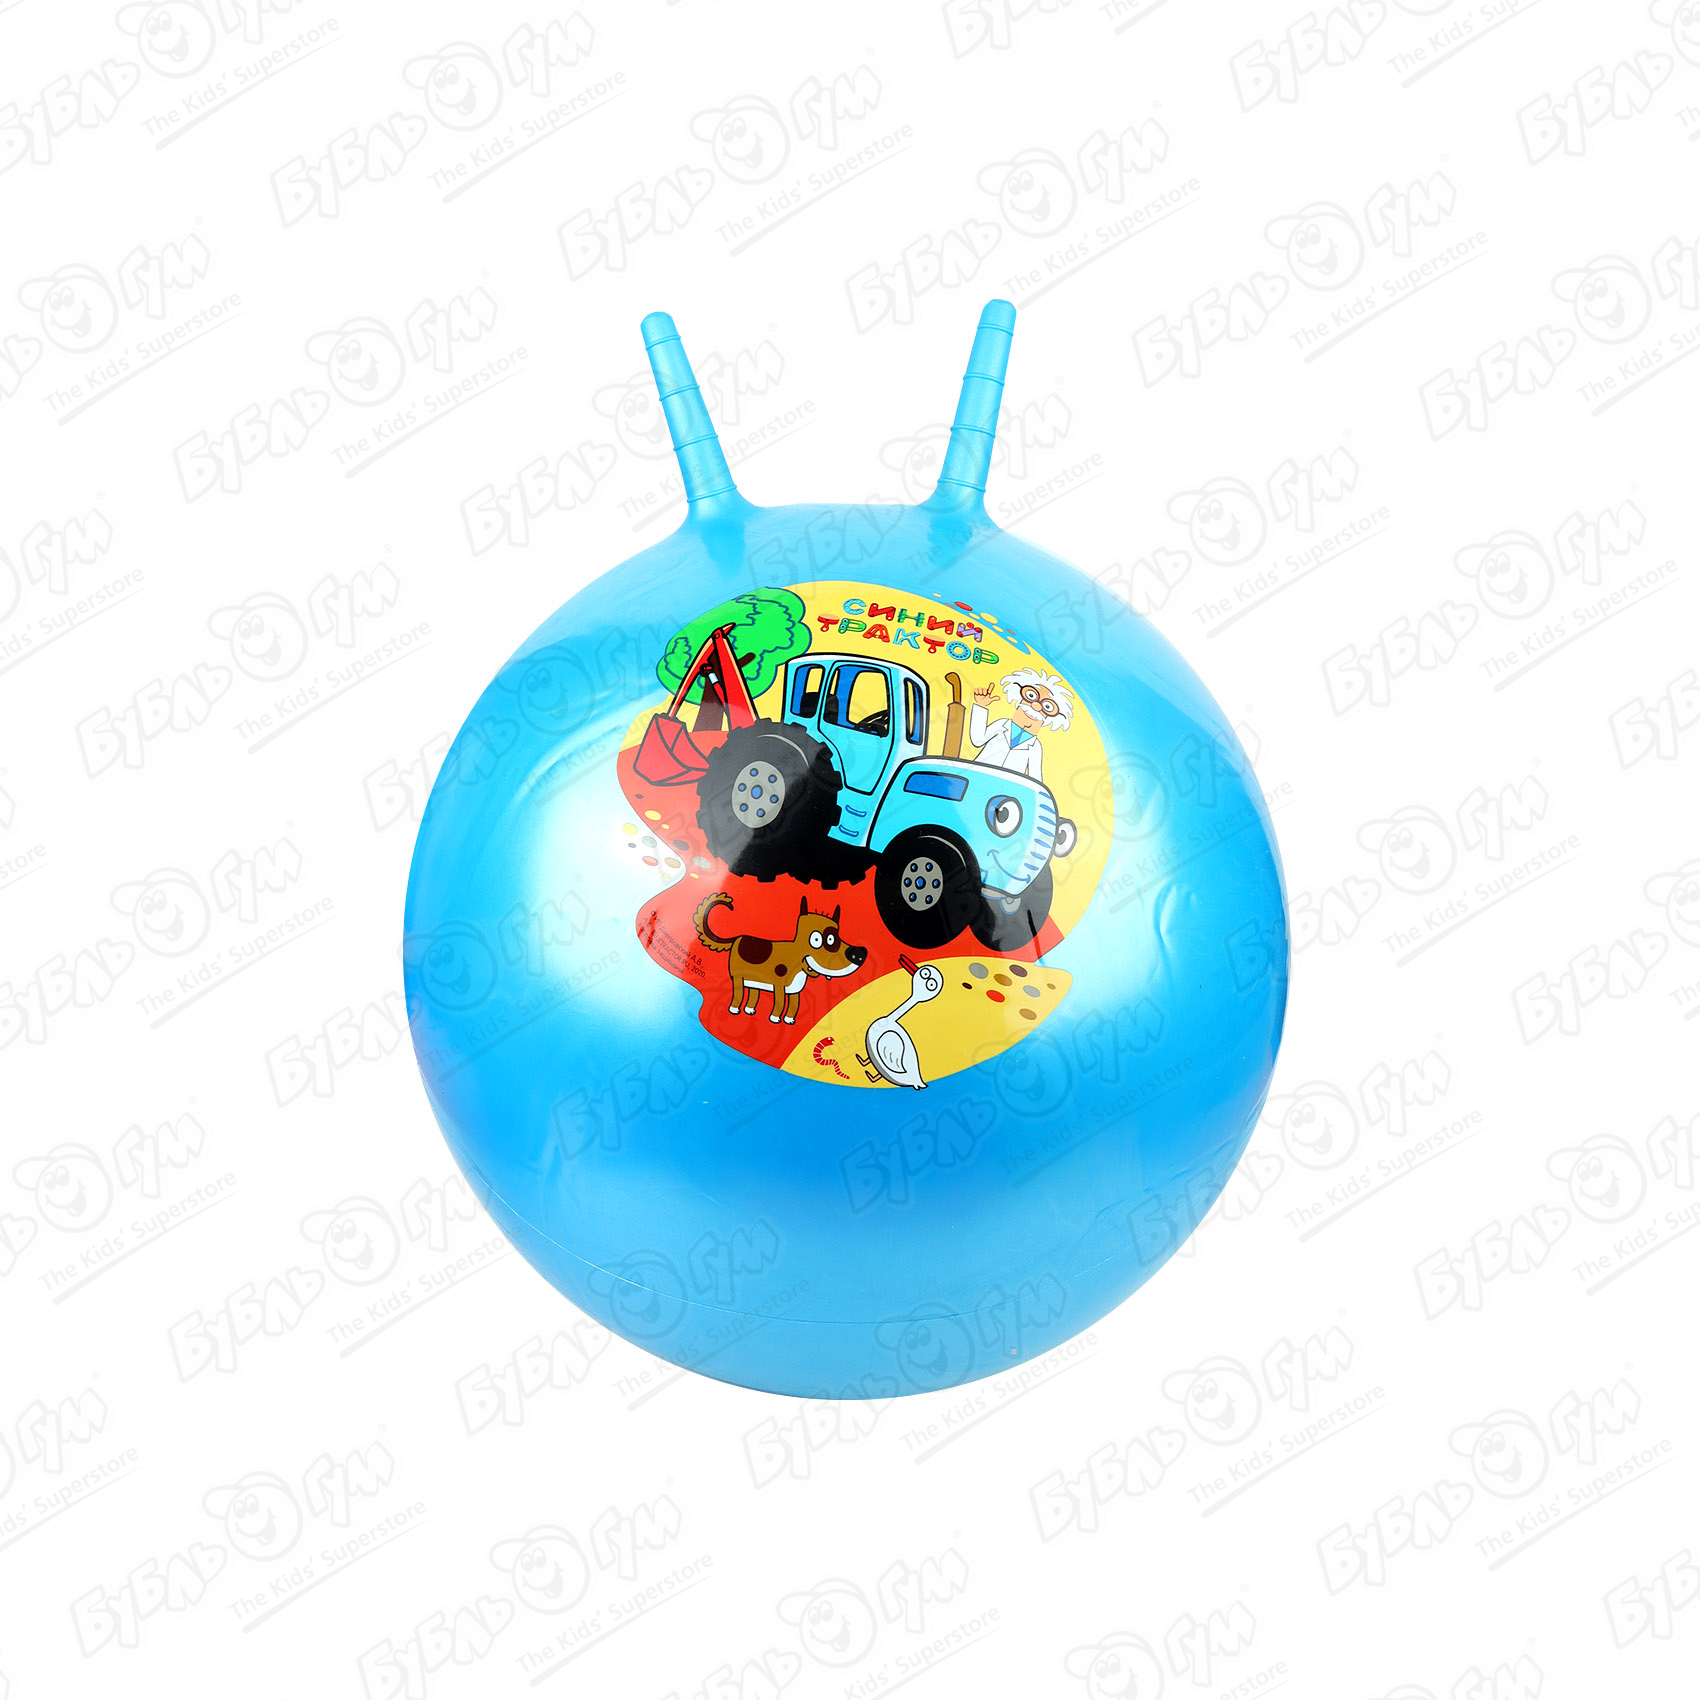 Мяч прыгун с рожками Синий трактор 55см в ассортименте мячи прыгуны skyballs ной бум 25 мм 50 шт